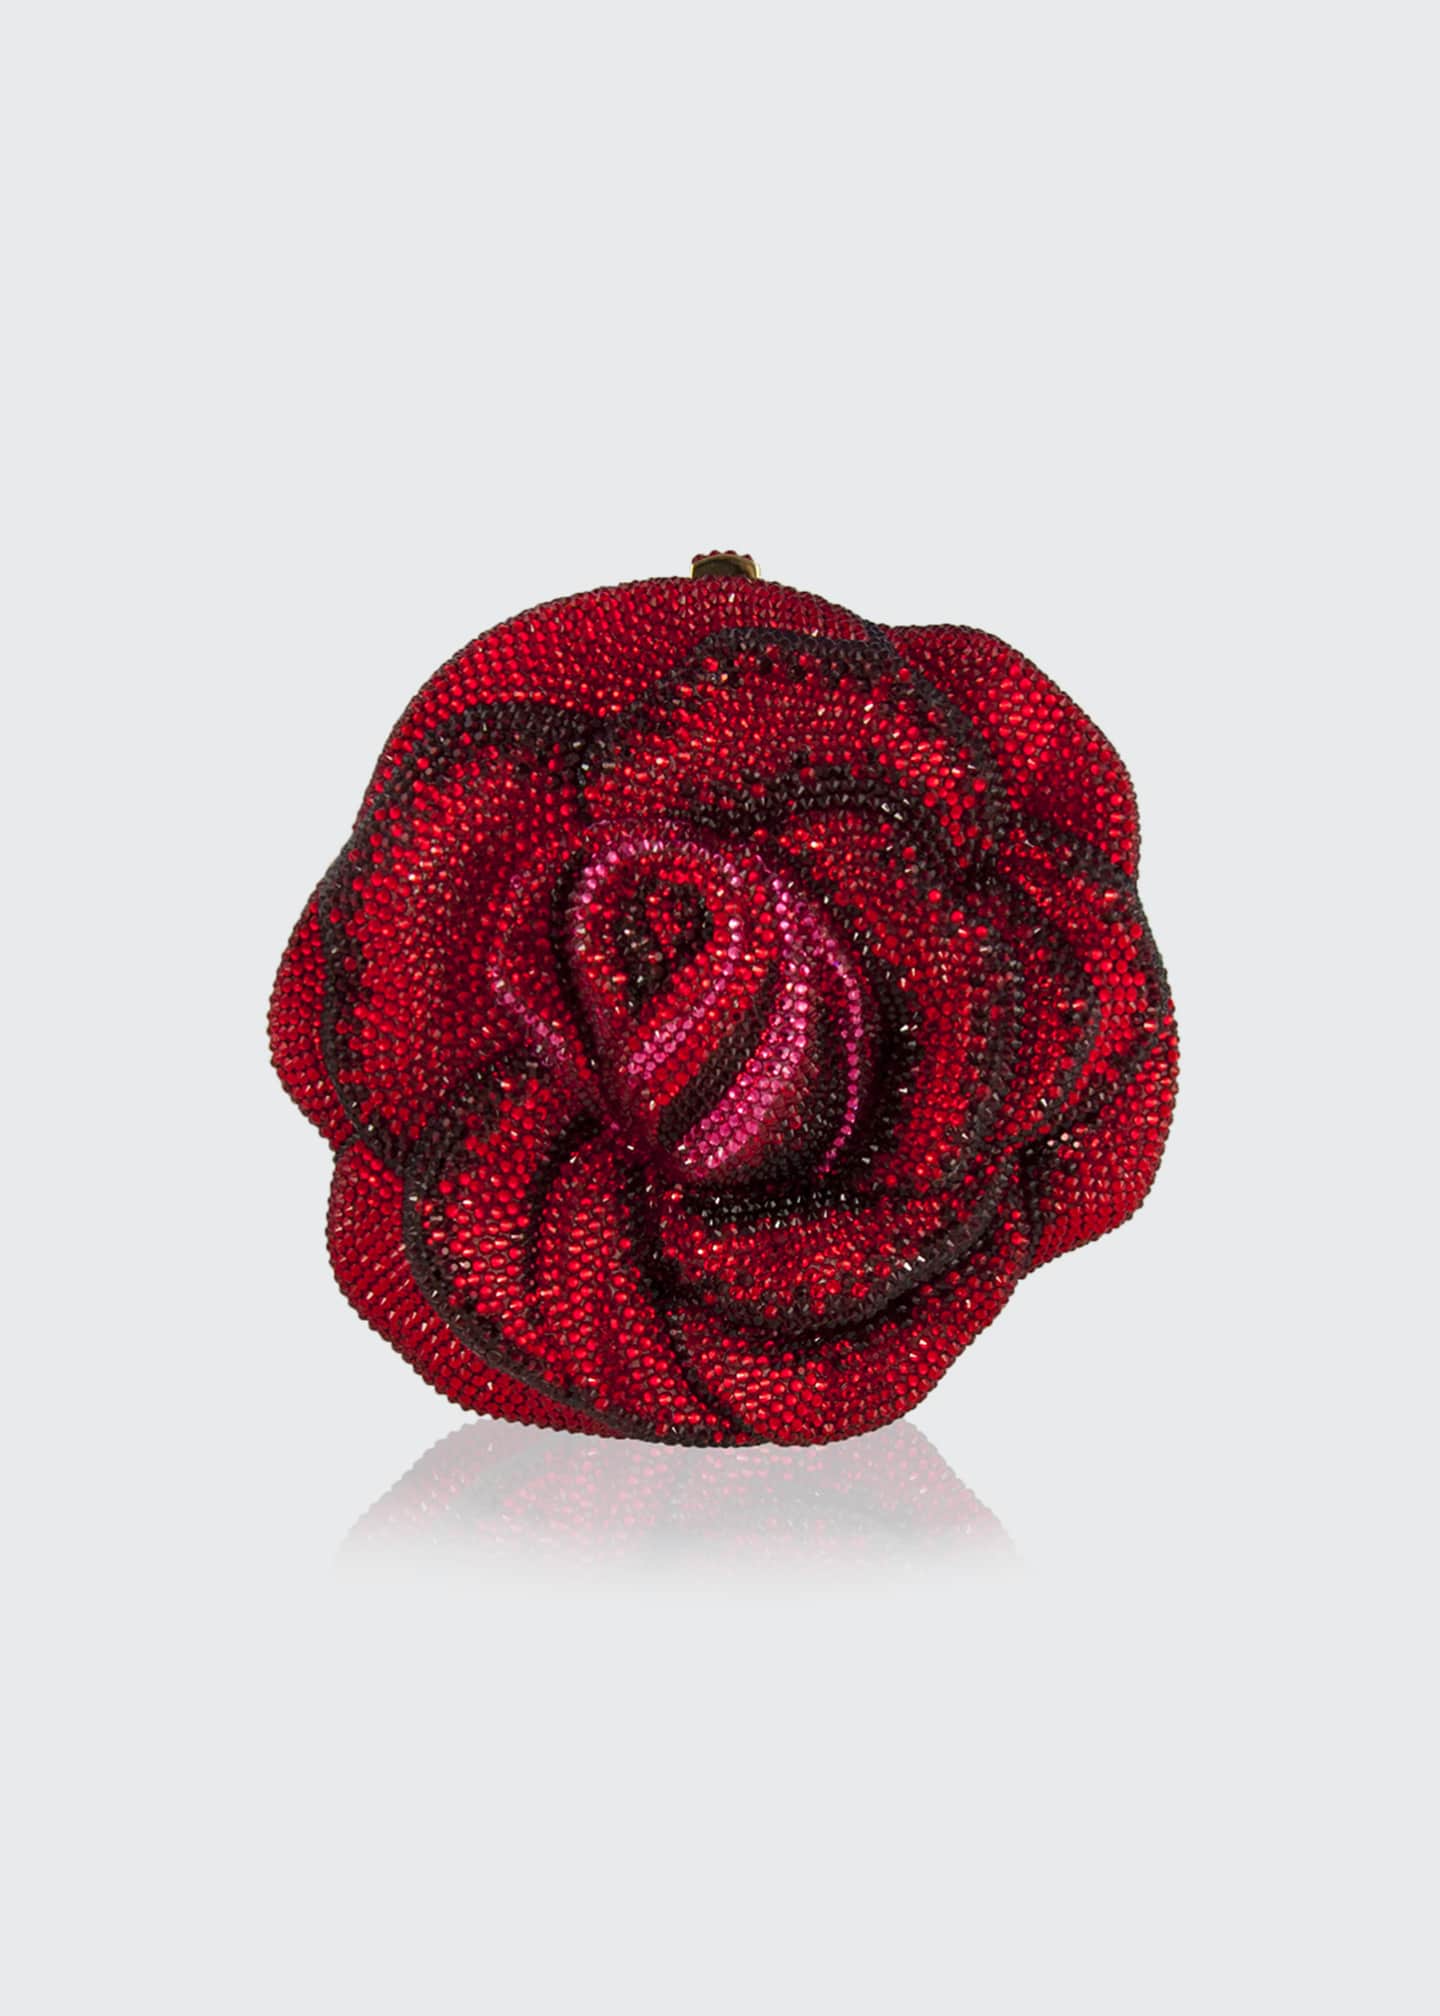 Judith Leiber Crystal-embellished Rose Clutch Bag in Natural